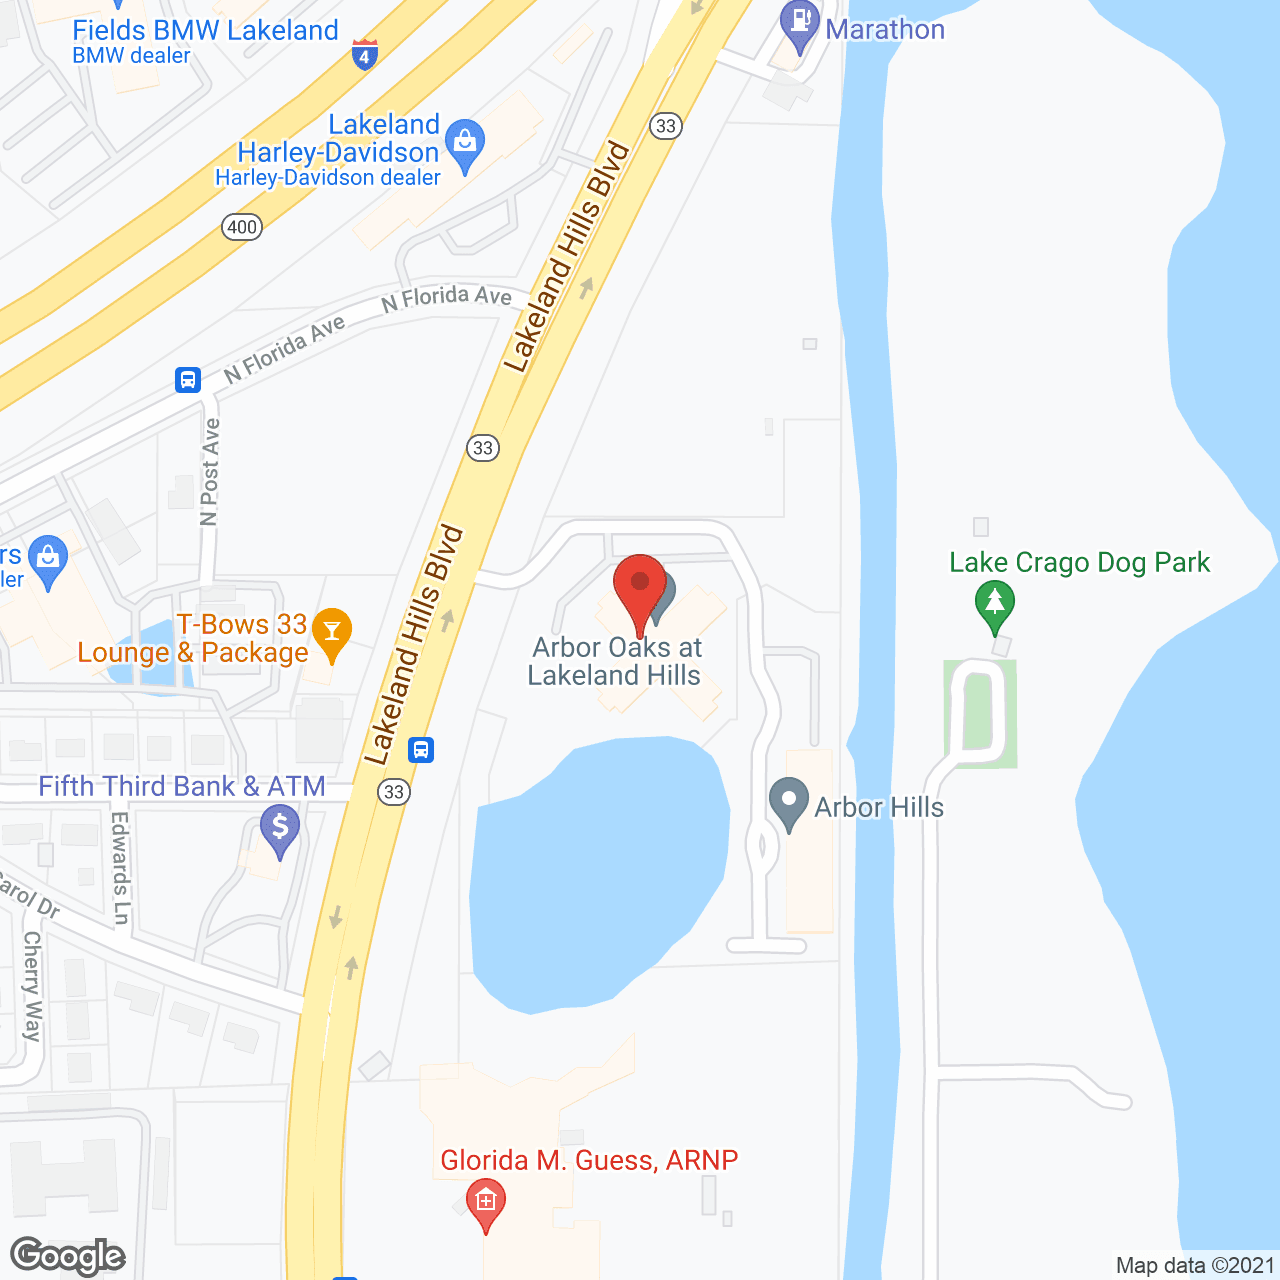 Arbor Oaks at Lakeland Hills in google map